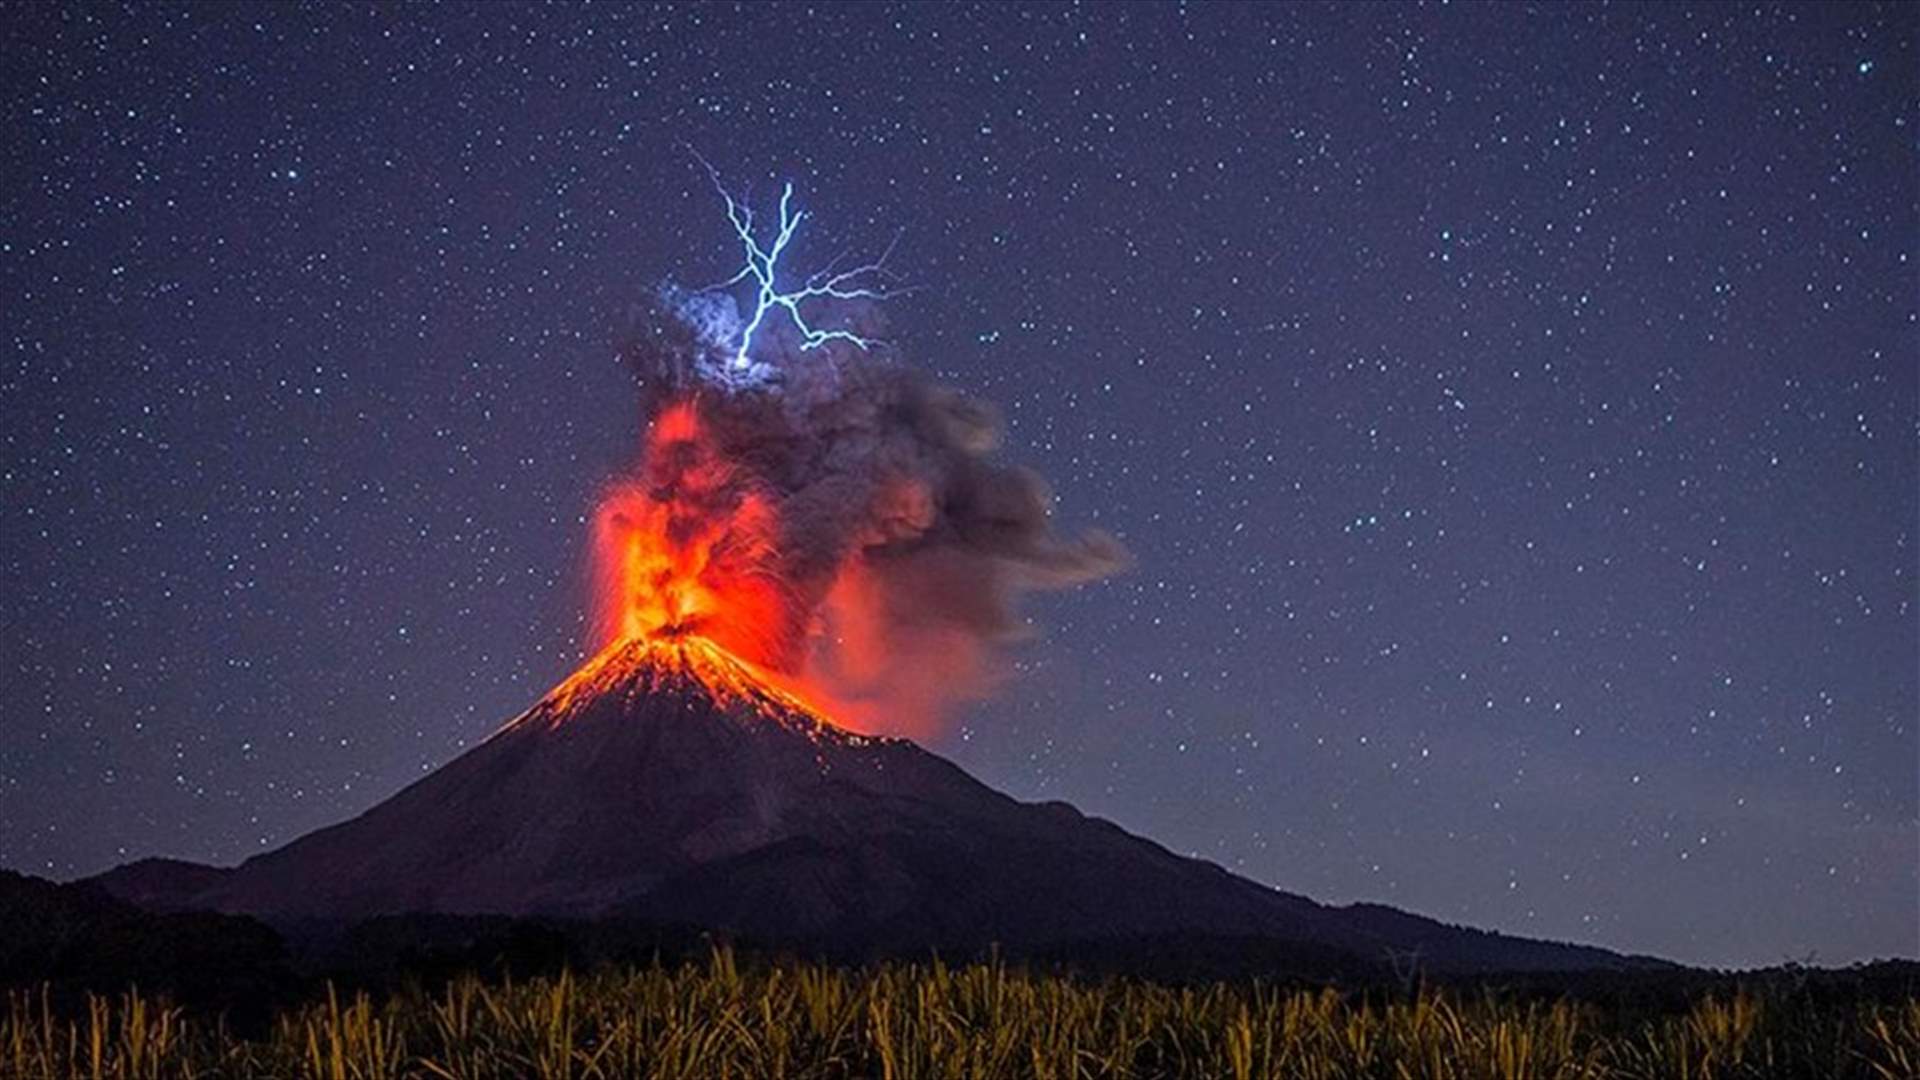 بالفيديو - لحظة انفجار بركان كوليما في المكسيك